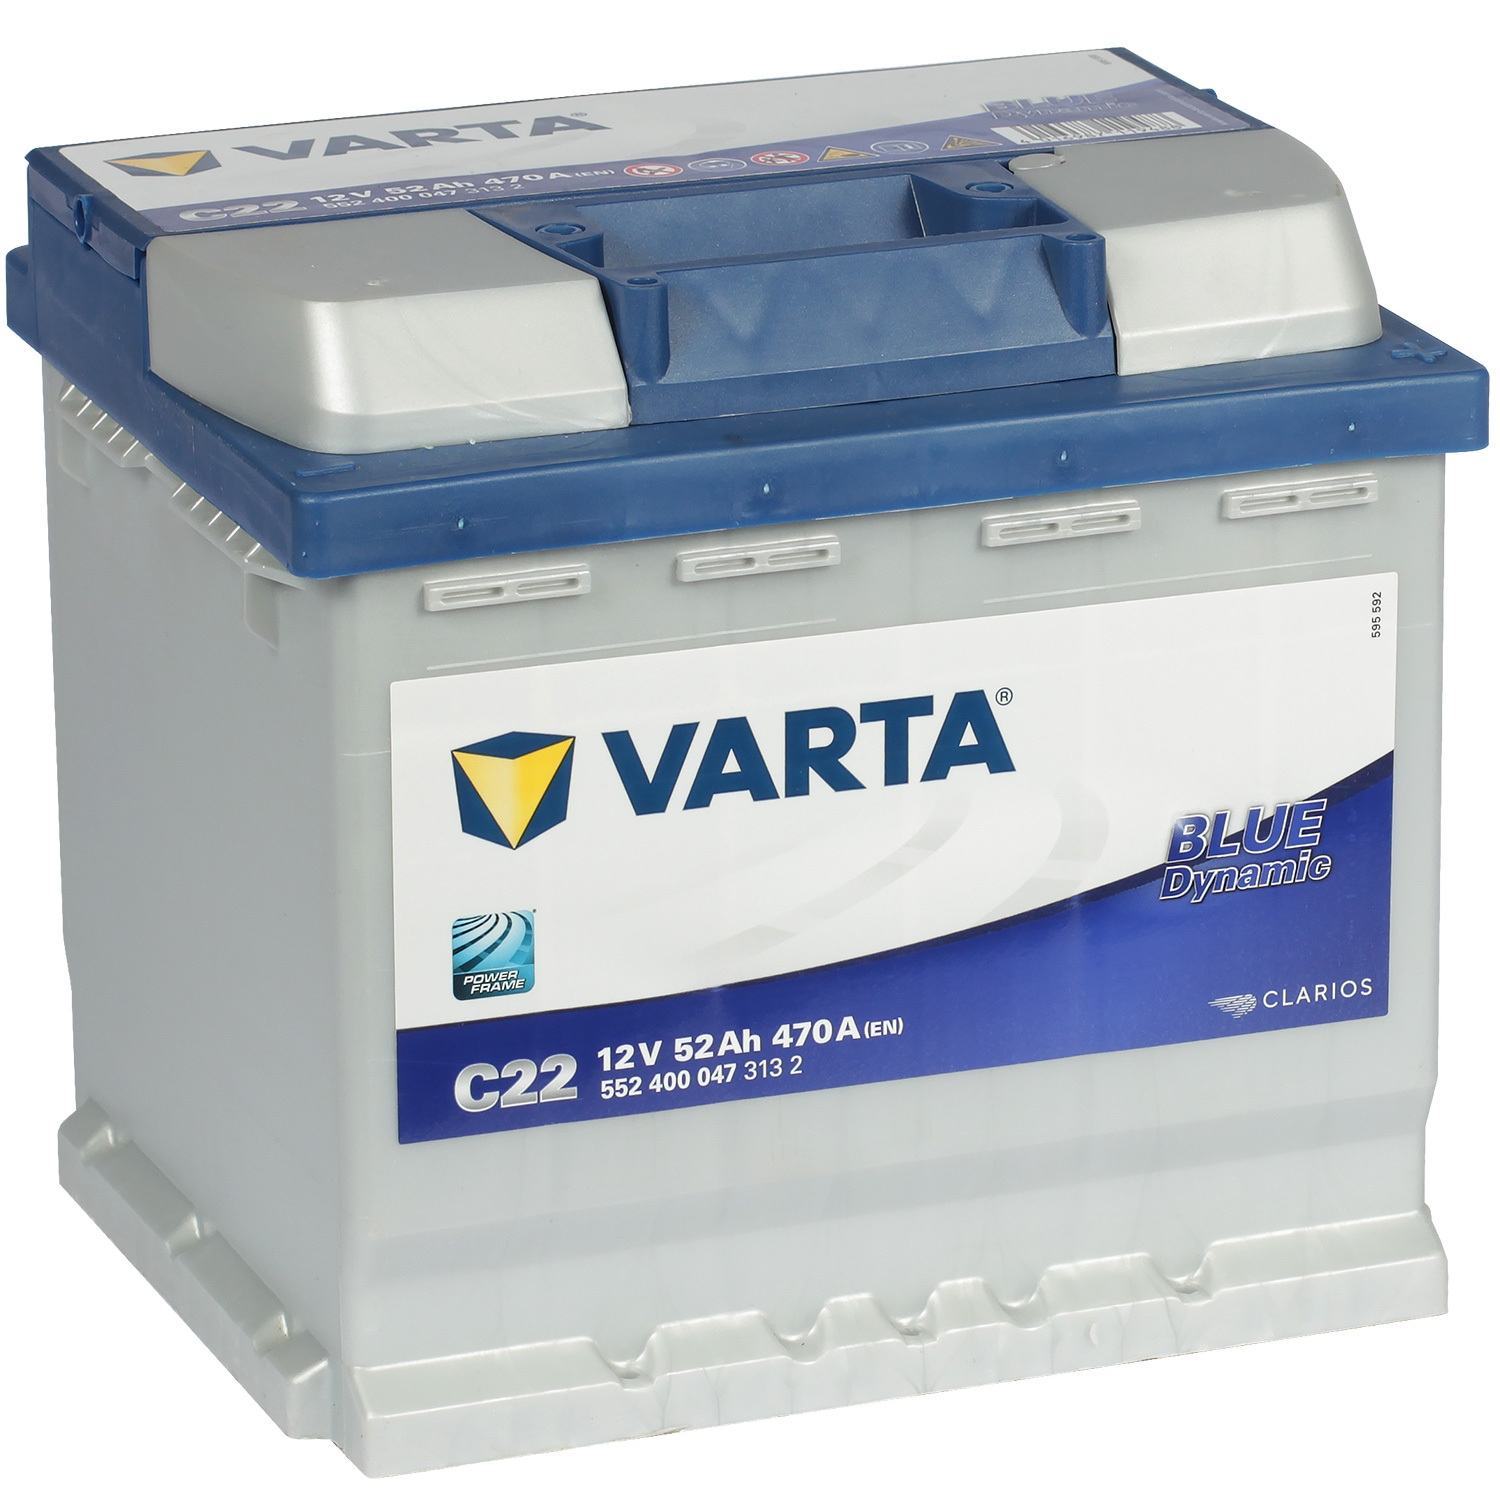 Varta Автомобильный аккумулятор Varta Blue Dynamic C22 52 Ач обратная полярность L1 varta автомобильный аккумулятор varta 45 ач прямая полярность b24r